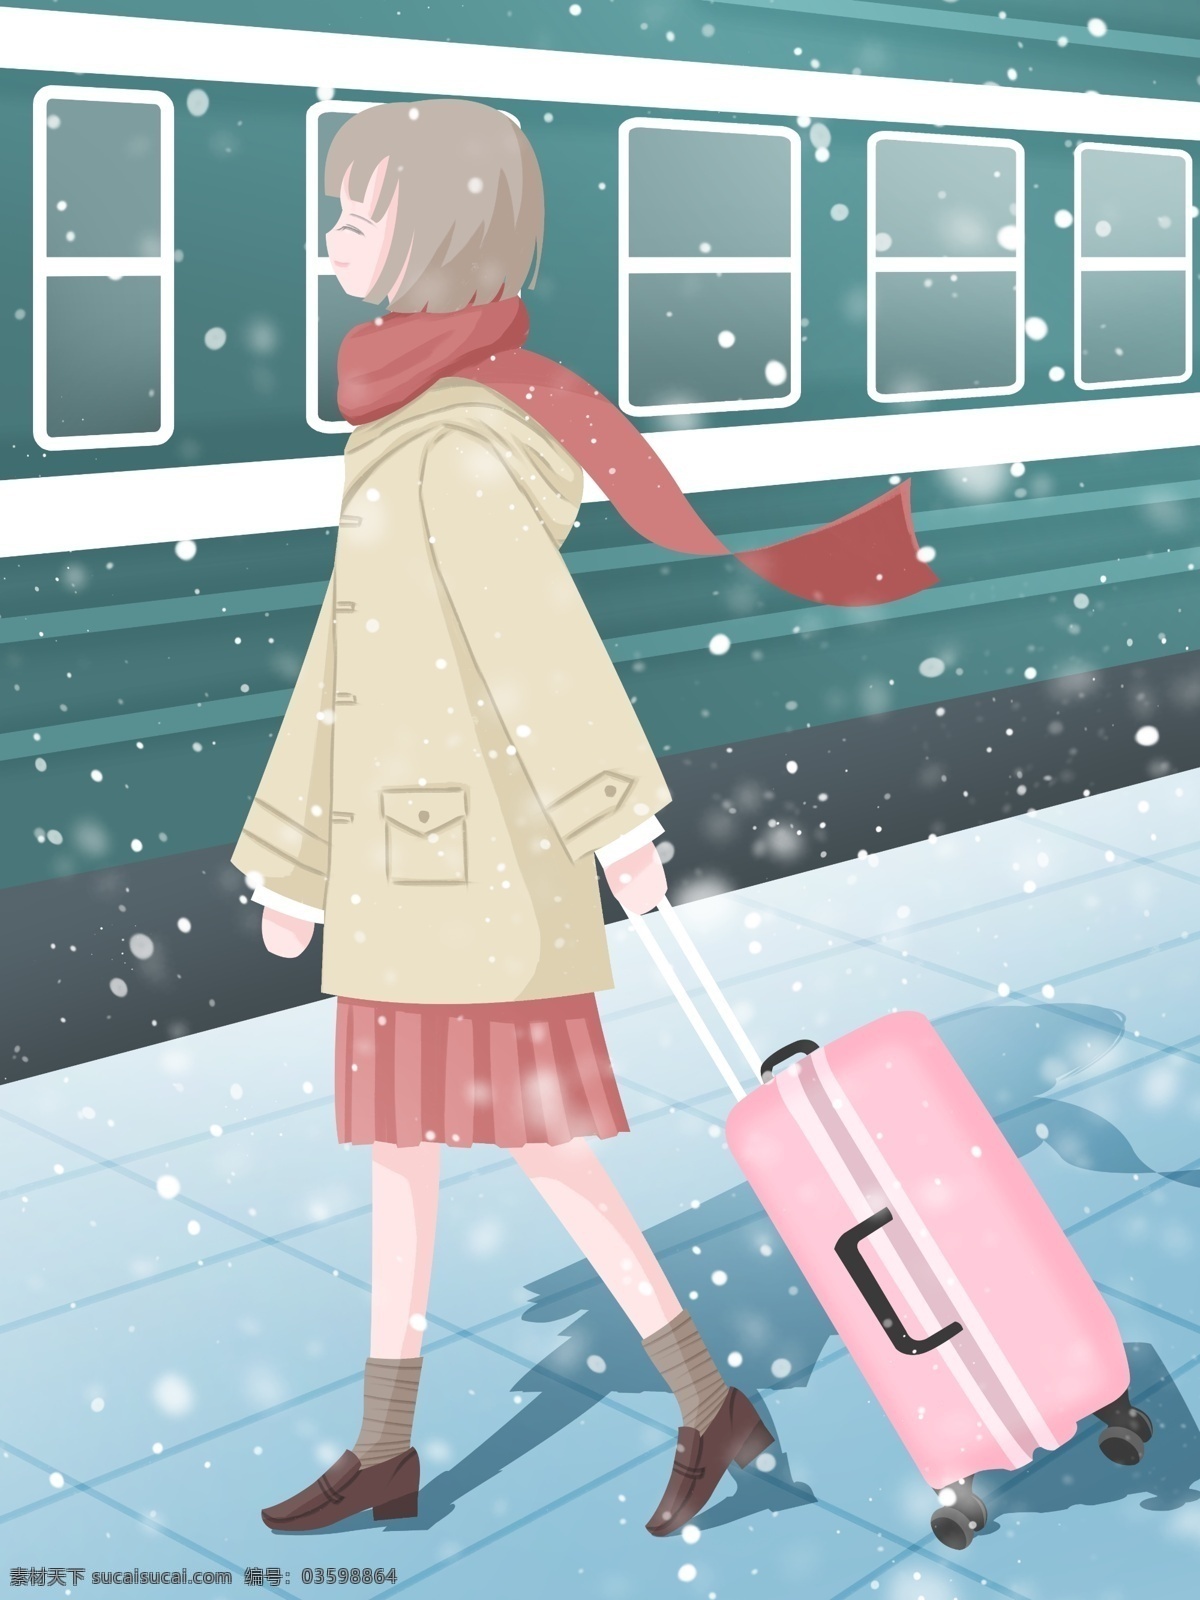 春运 回家 插画 寒假 女孩 火车 冬天 春节 雪景 壁纸 年假 车站 行李箱 雪 背景